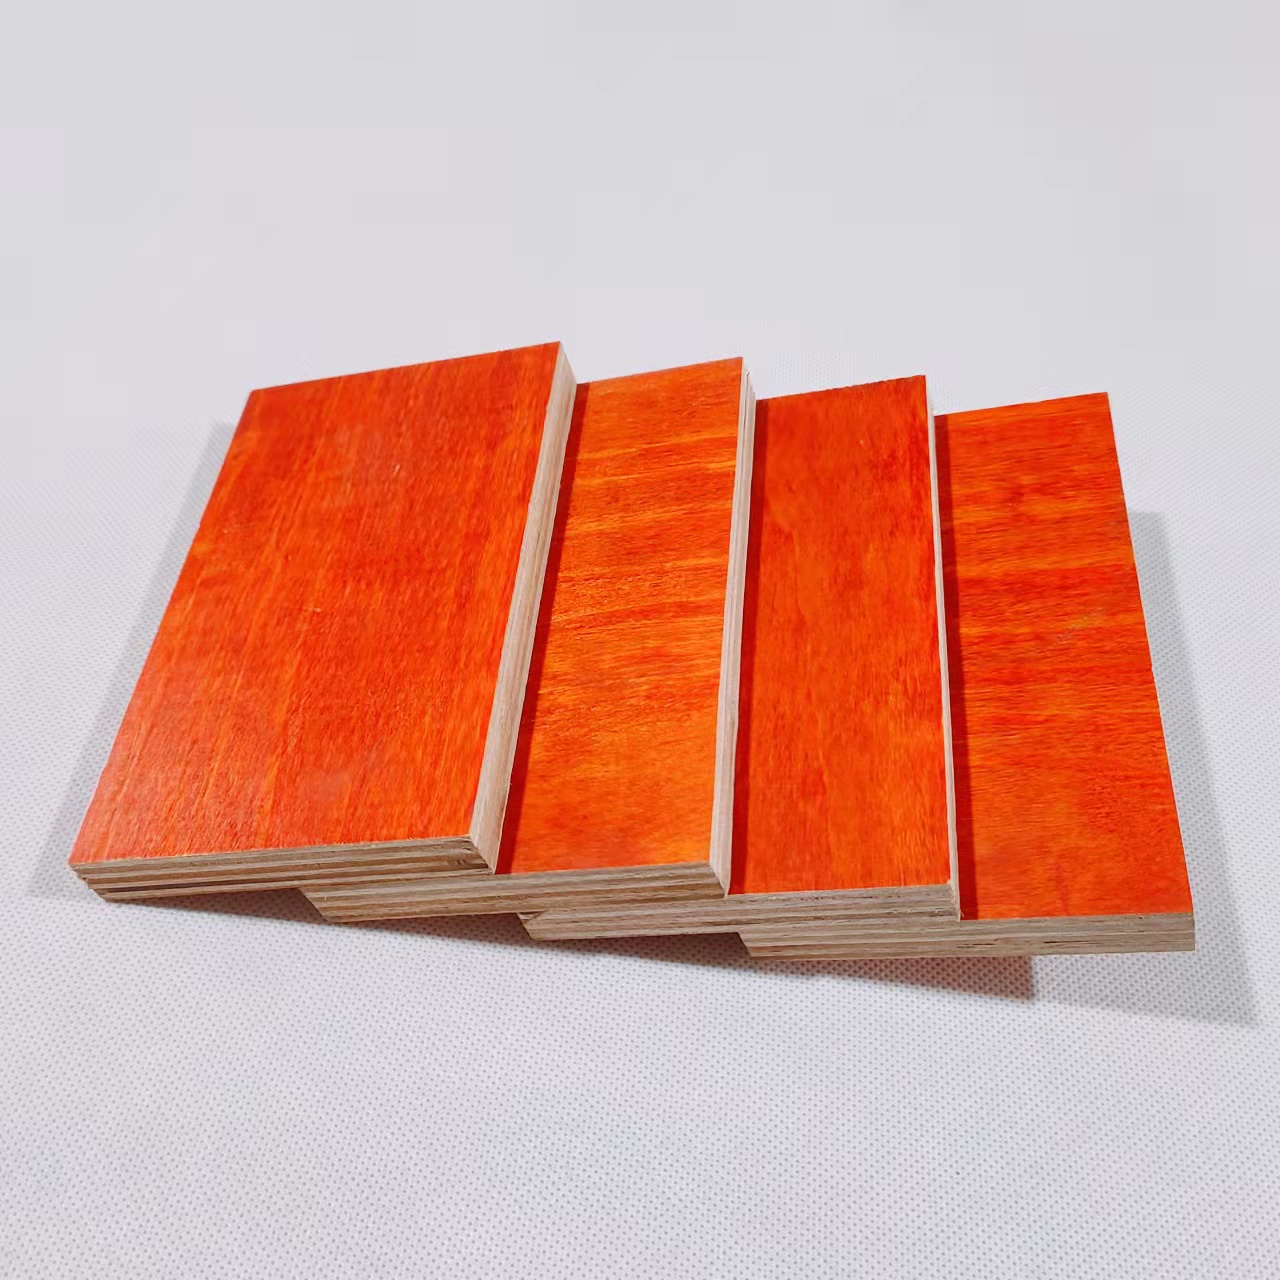 Placă de furnir de culoare roșie de calitate superioară cu material de pin și eucalipt